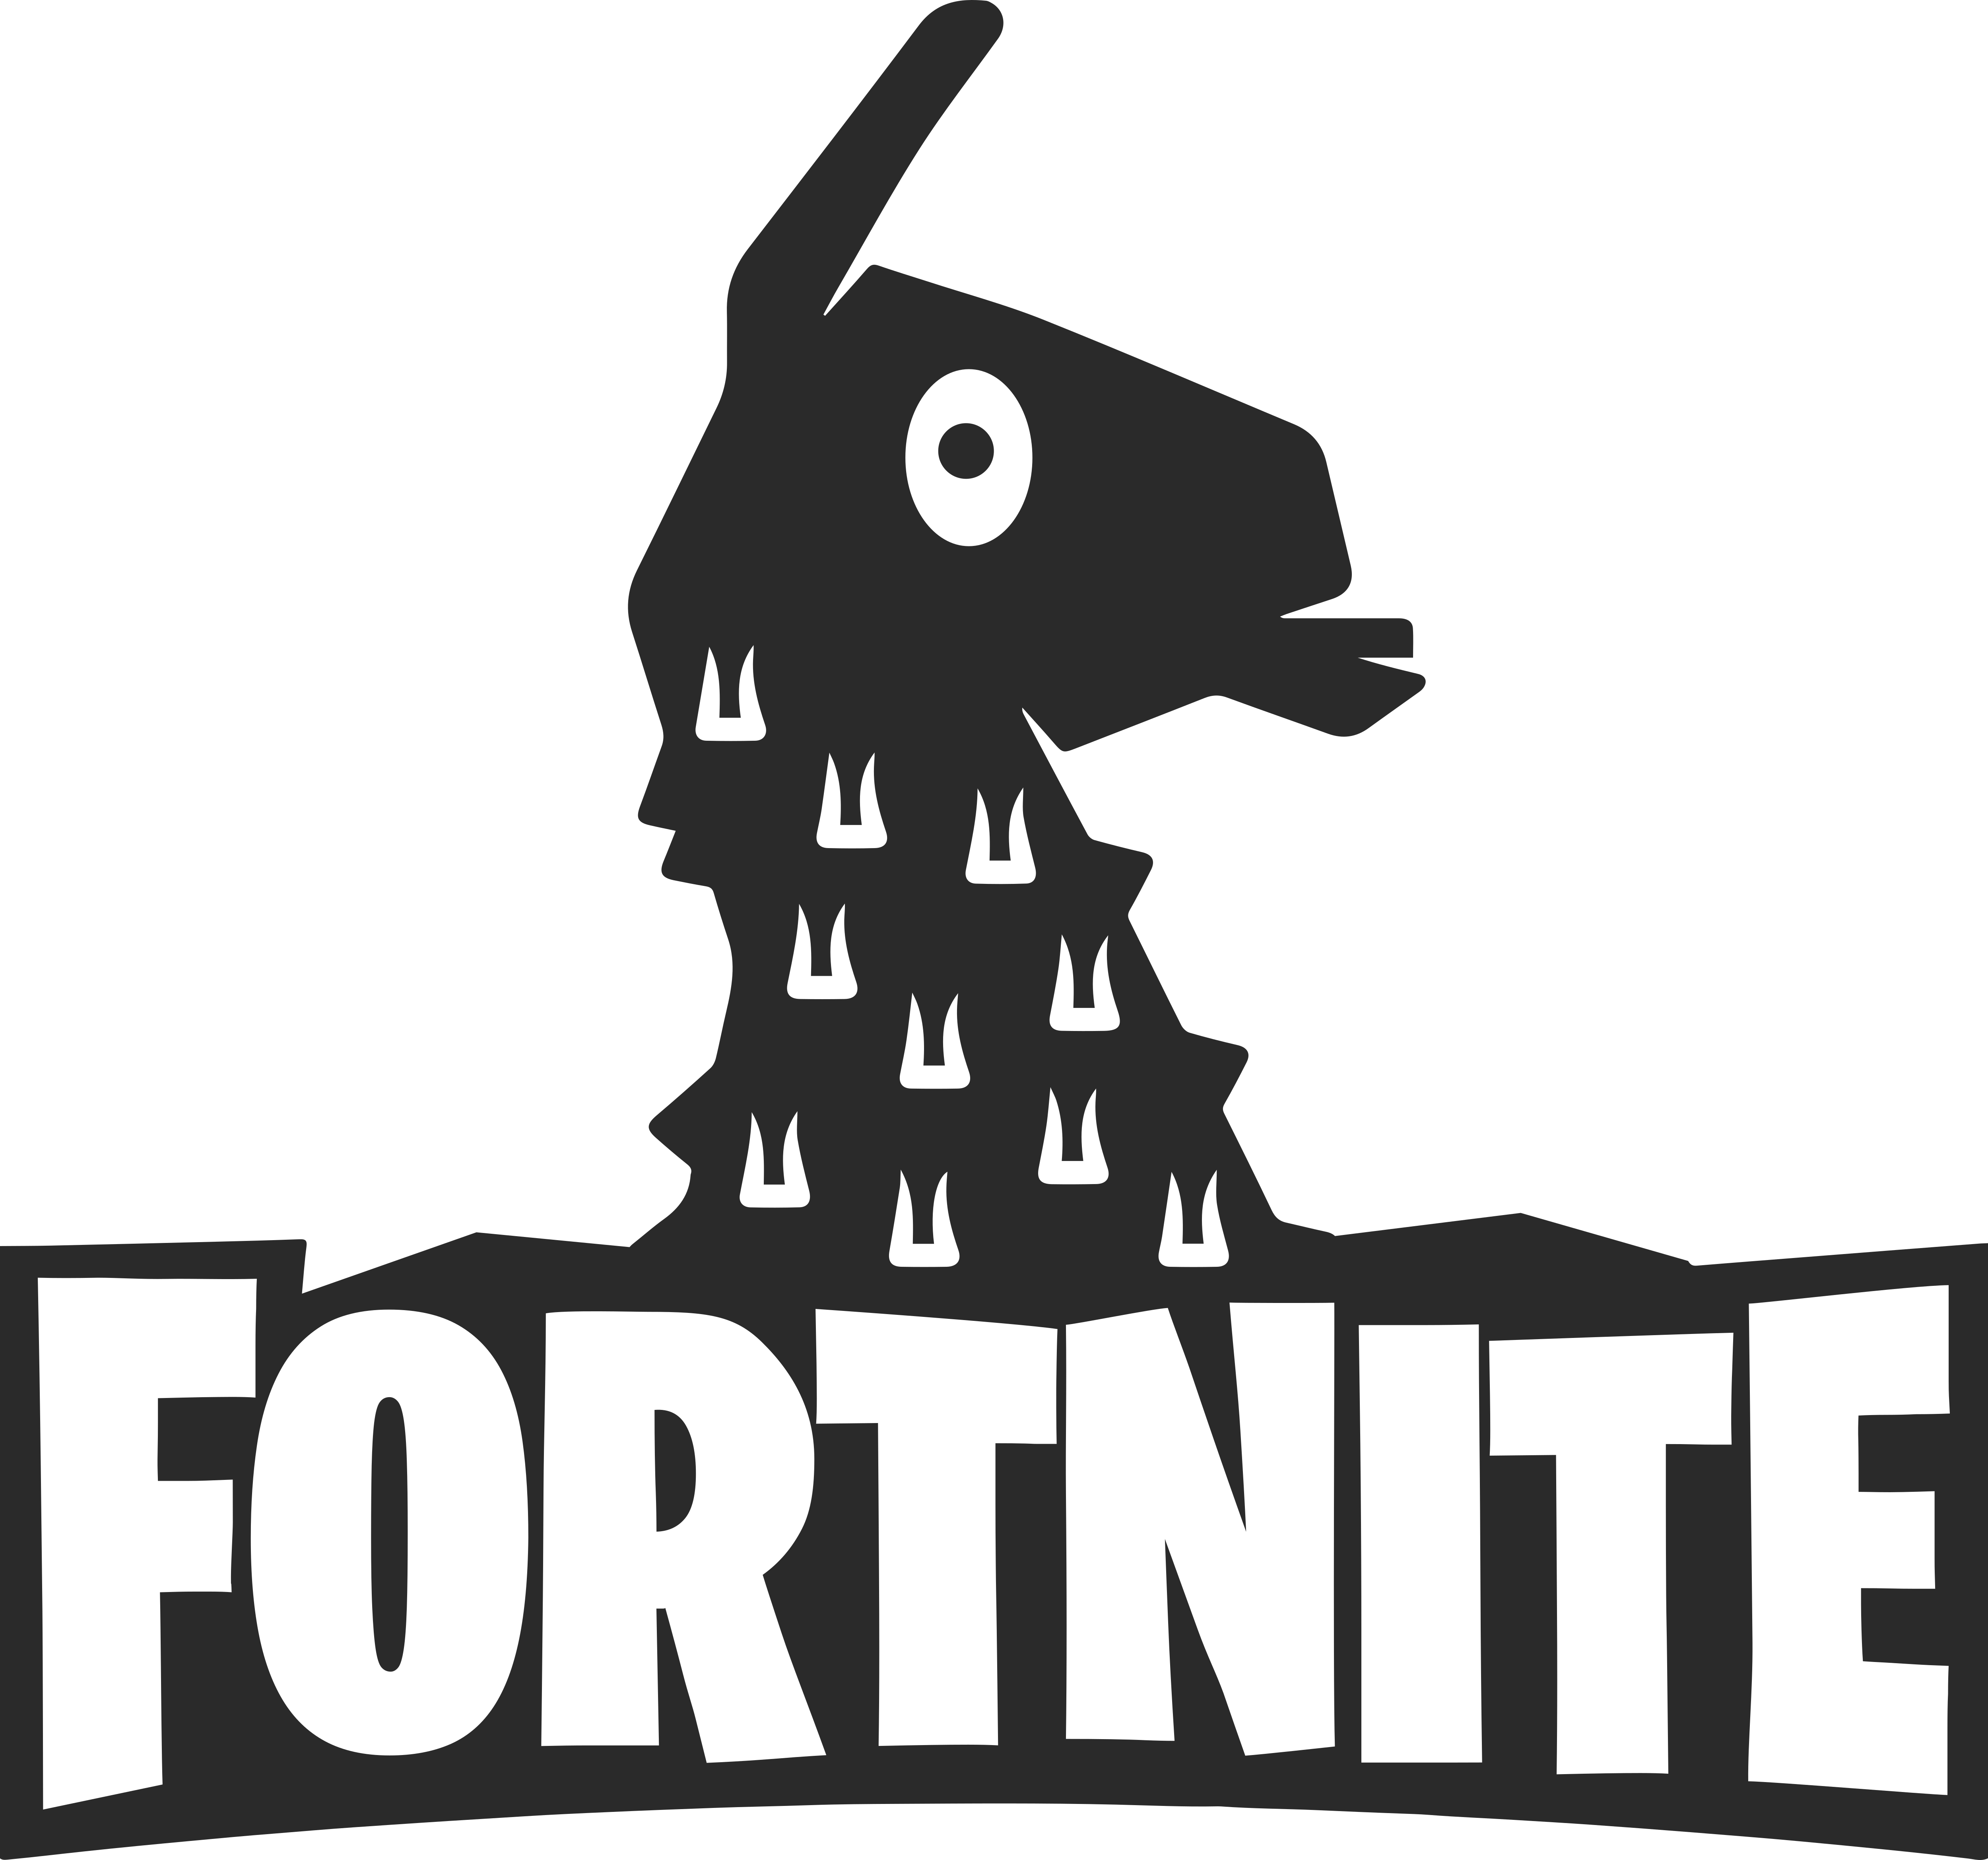 Fortnite – Logos Download